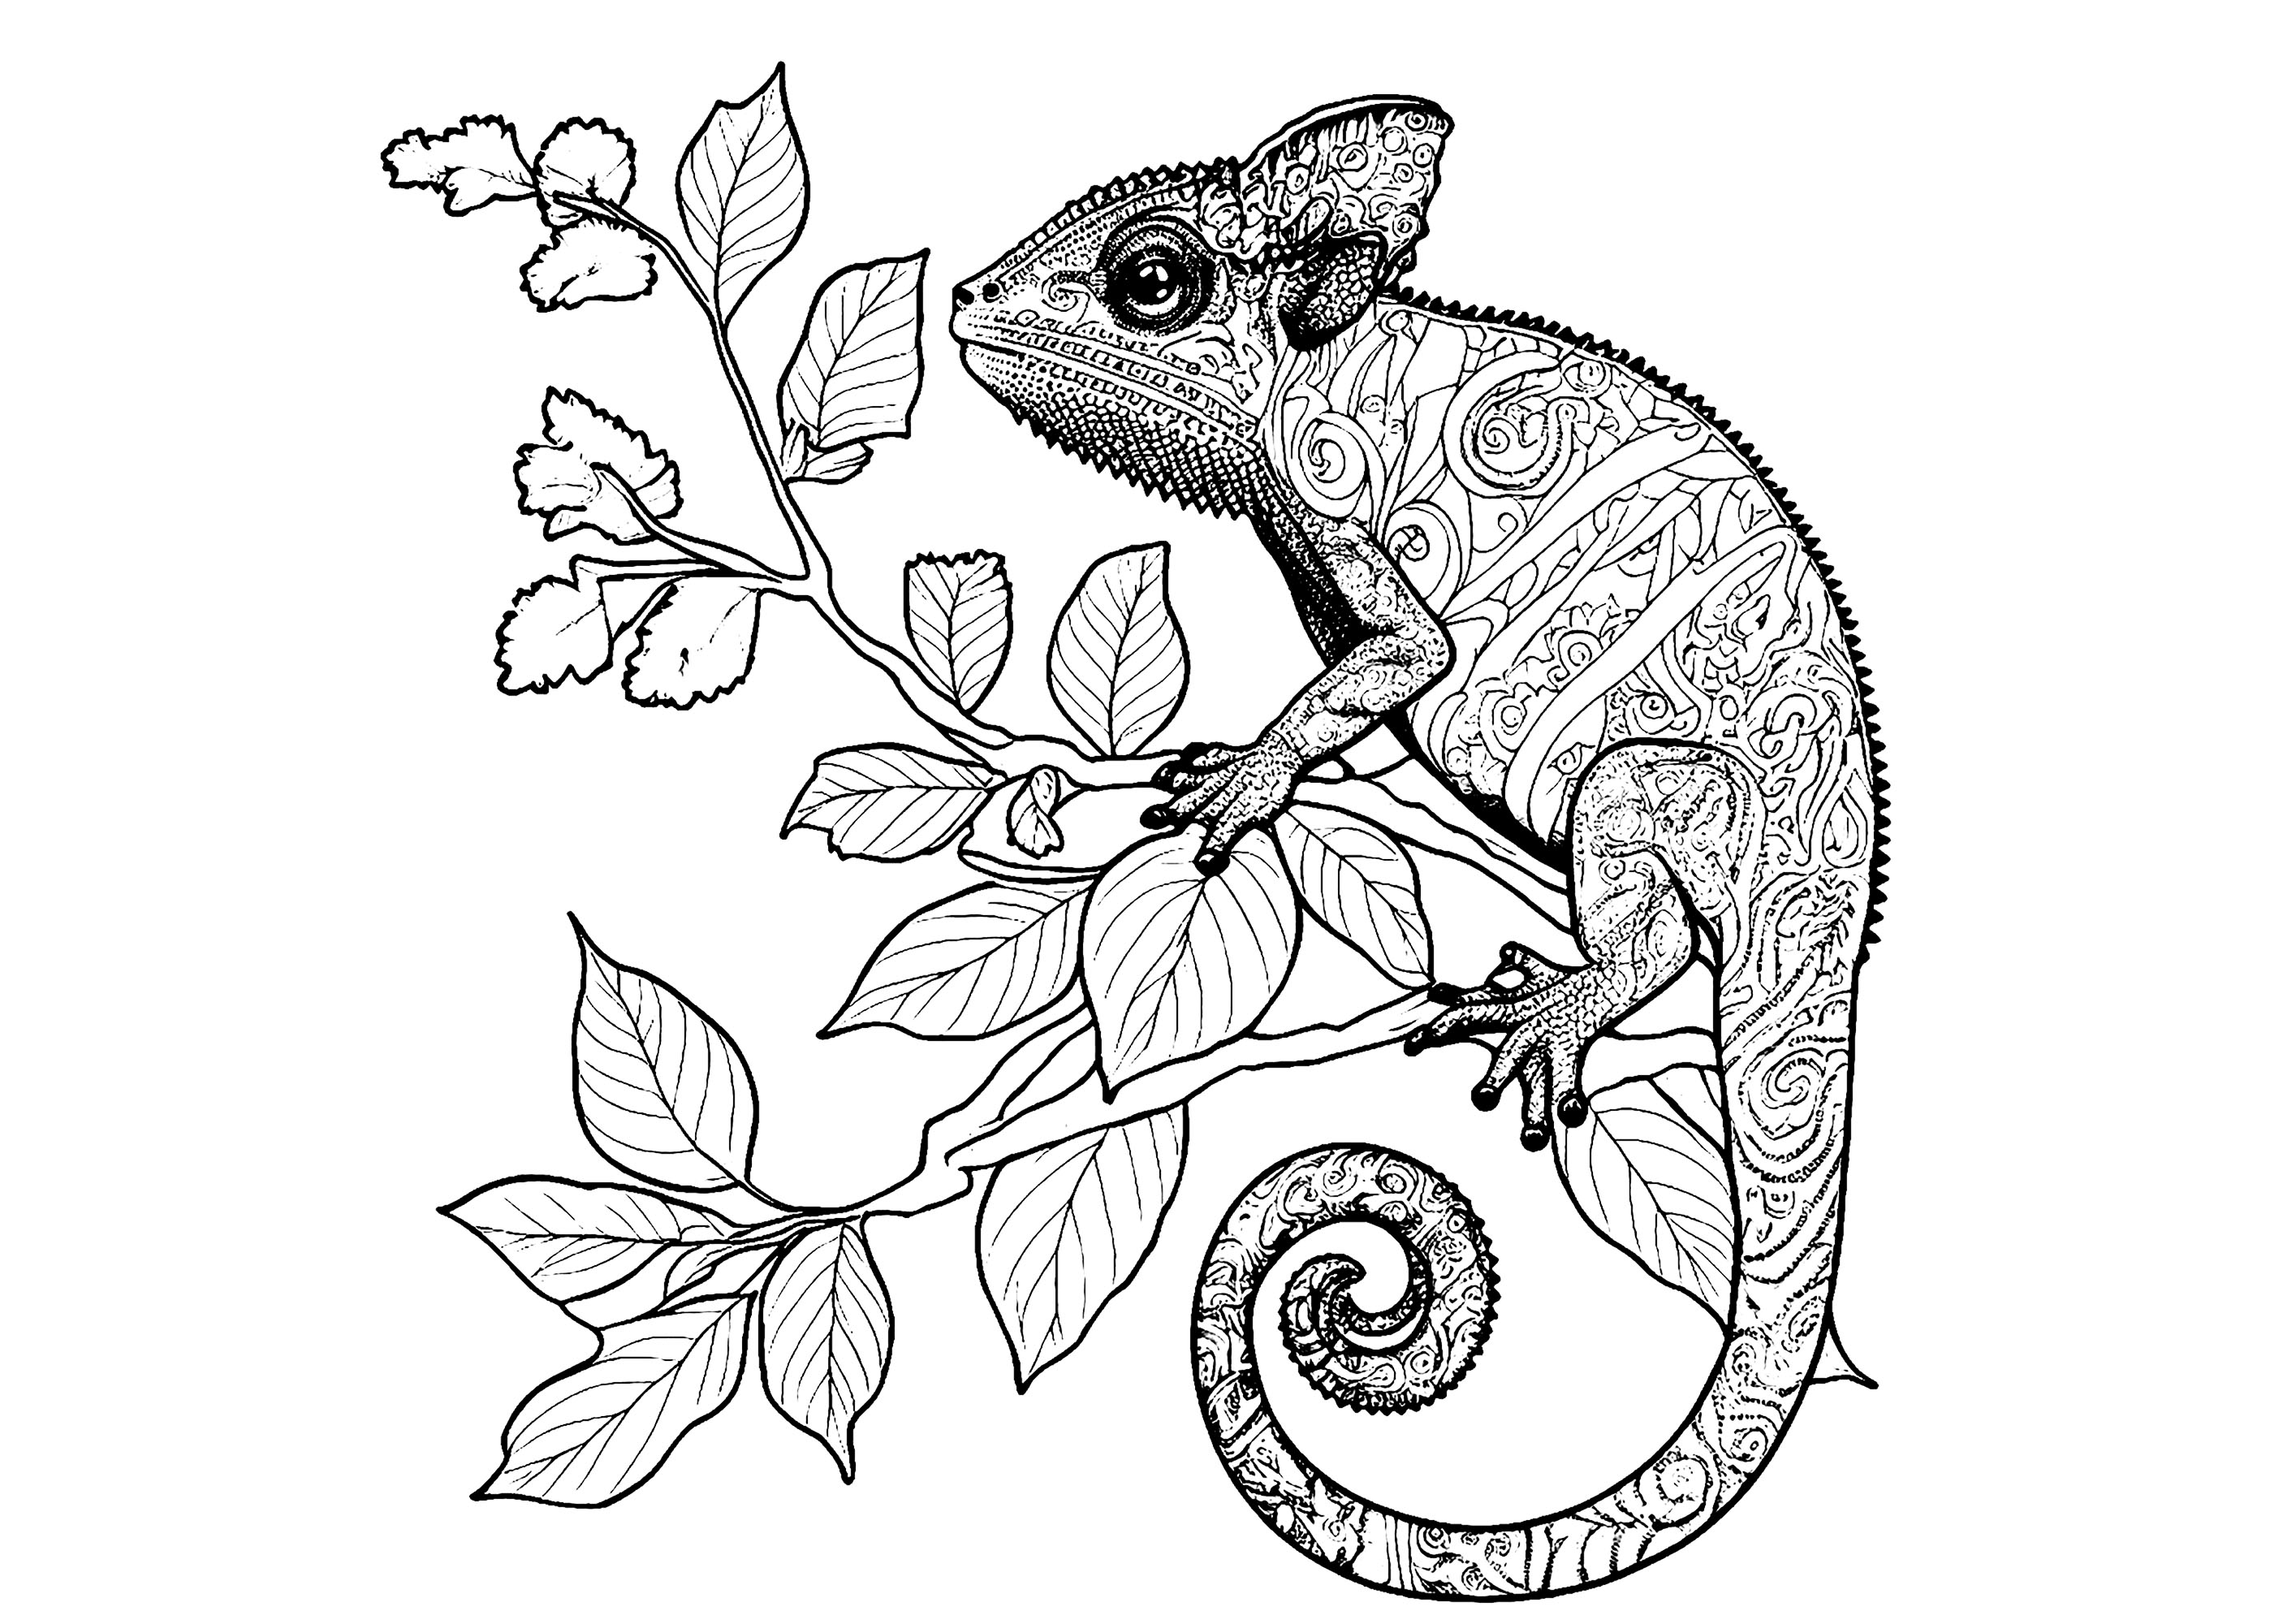 Coloração de um camaleão cheio de detalhes, colocado num ramo florido